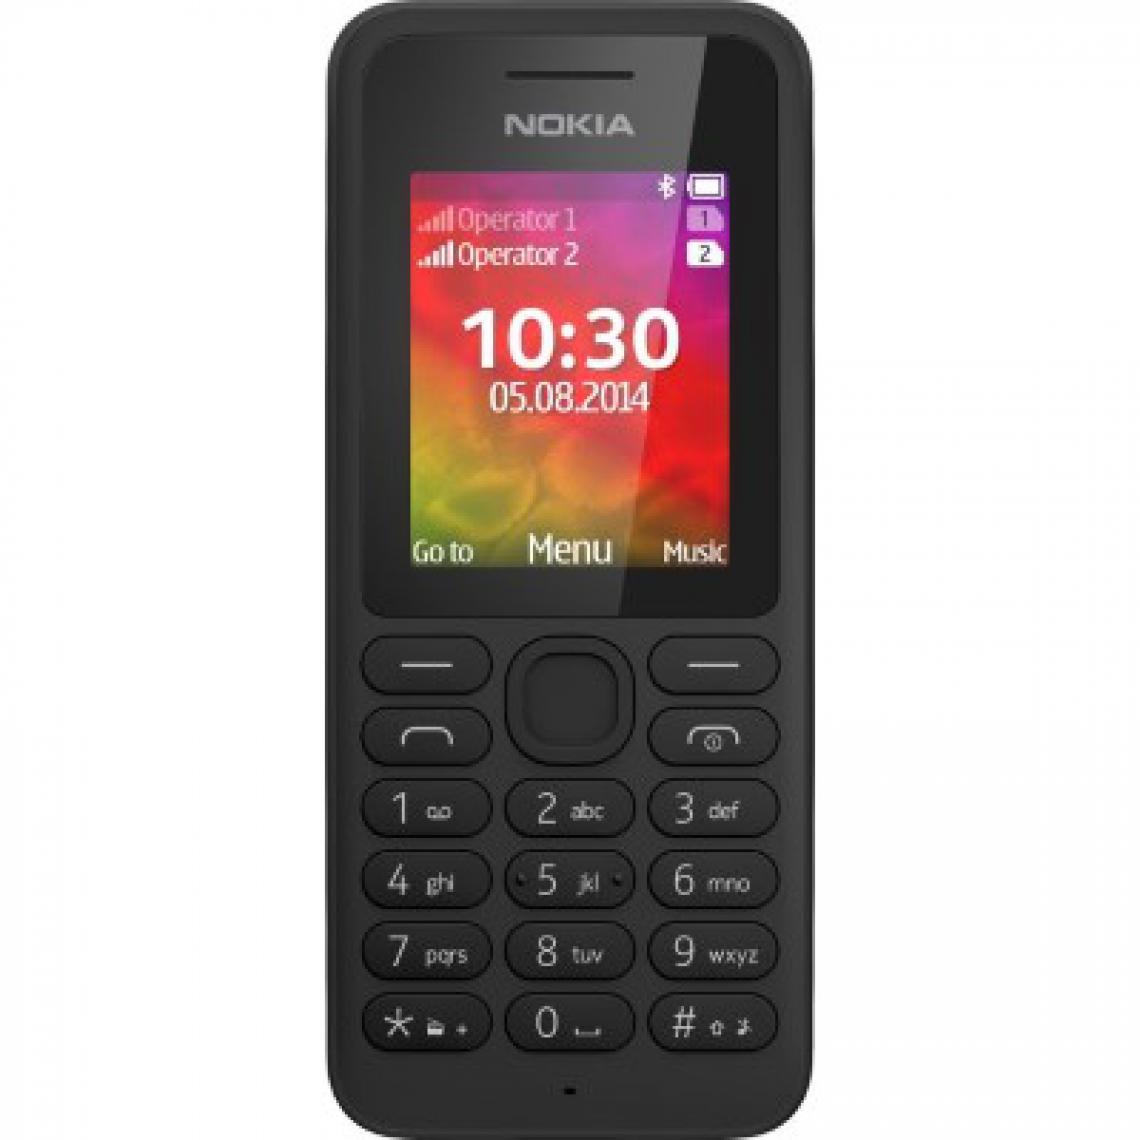 Nokia - Nokia 130 dual SIM noir débloqué - Smartphone Android